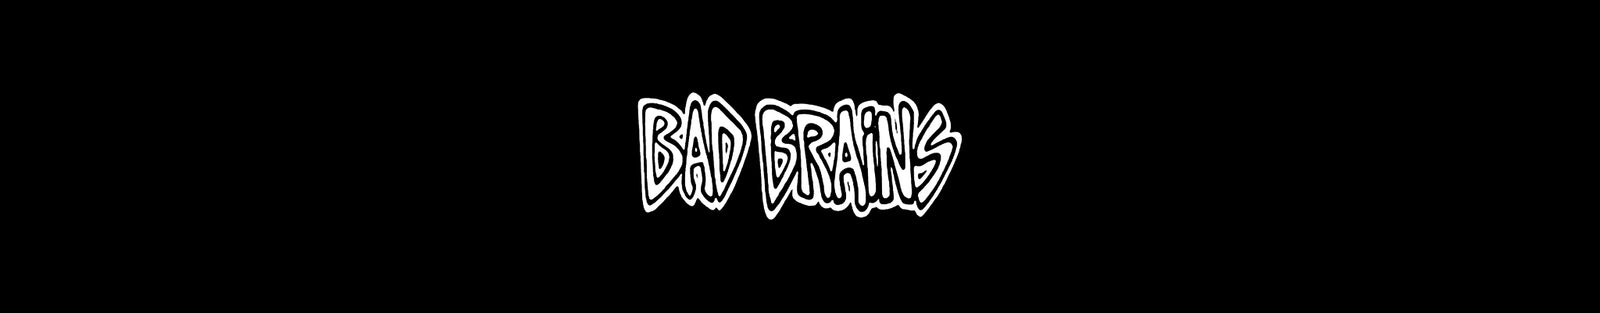 Bad Brains - Bad Brains - Hoodie